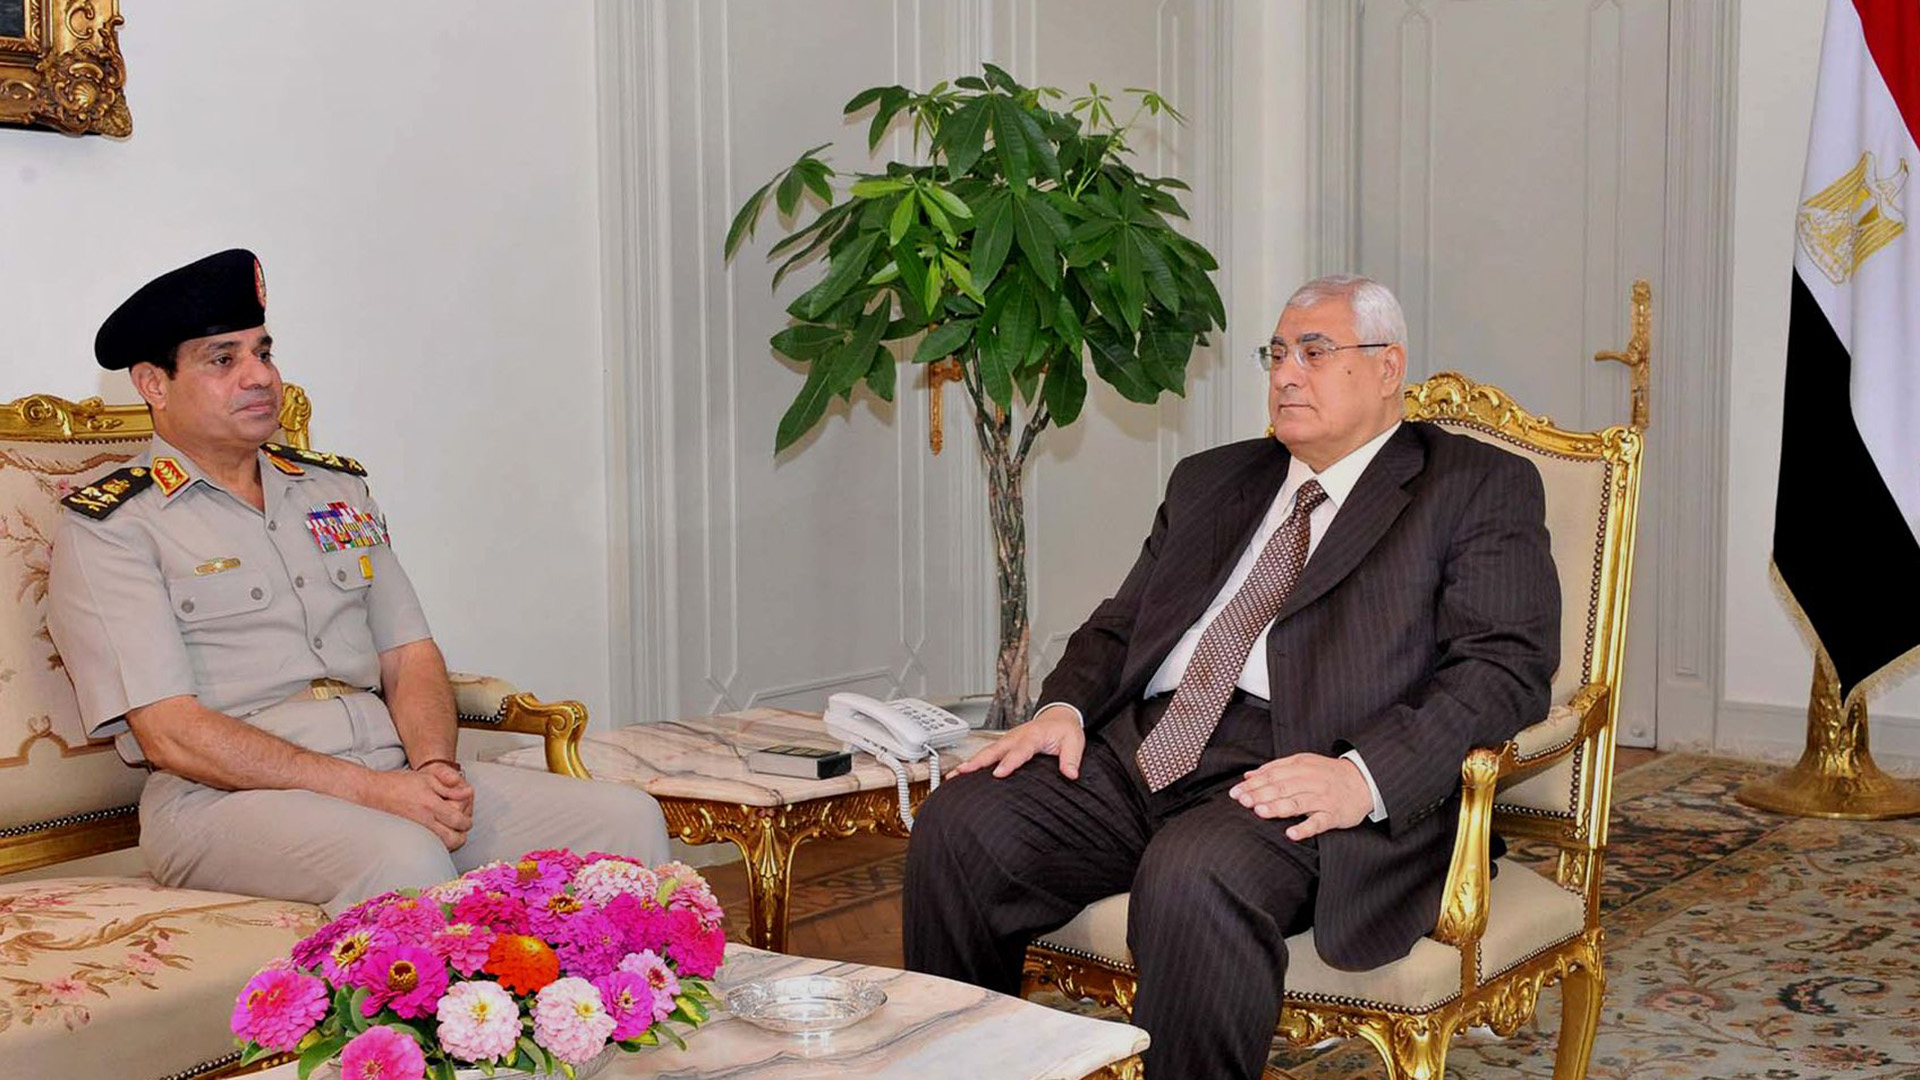 El presidente interino Adly Mansour (D) reunido con el ministro de Defensa Abdul Fatah al-Sisi el 5 de julio de 2013 (Foto de APA Images/Shutterstock)